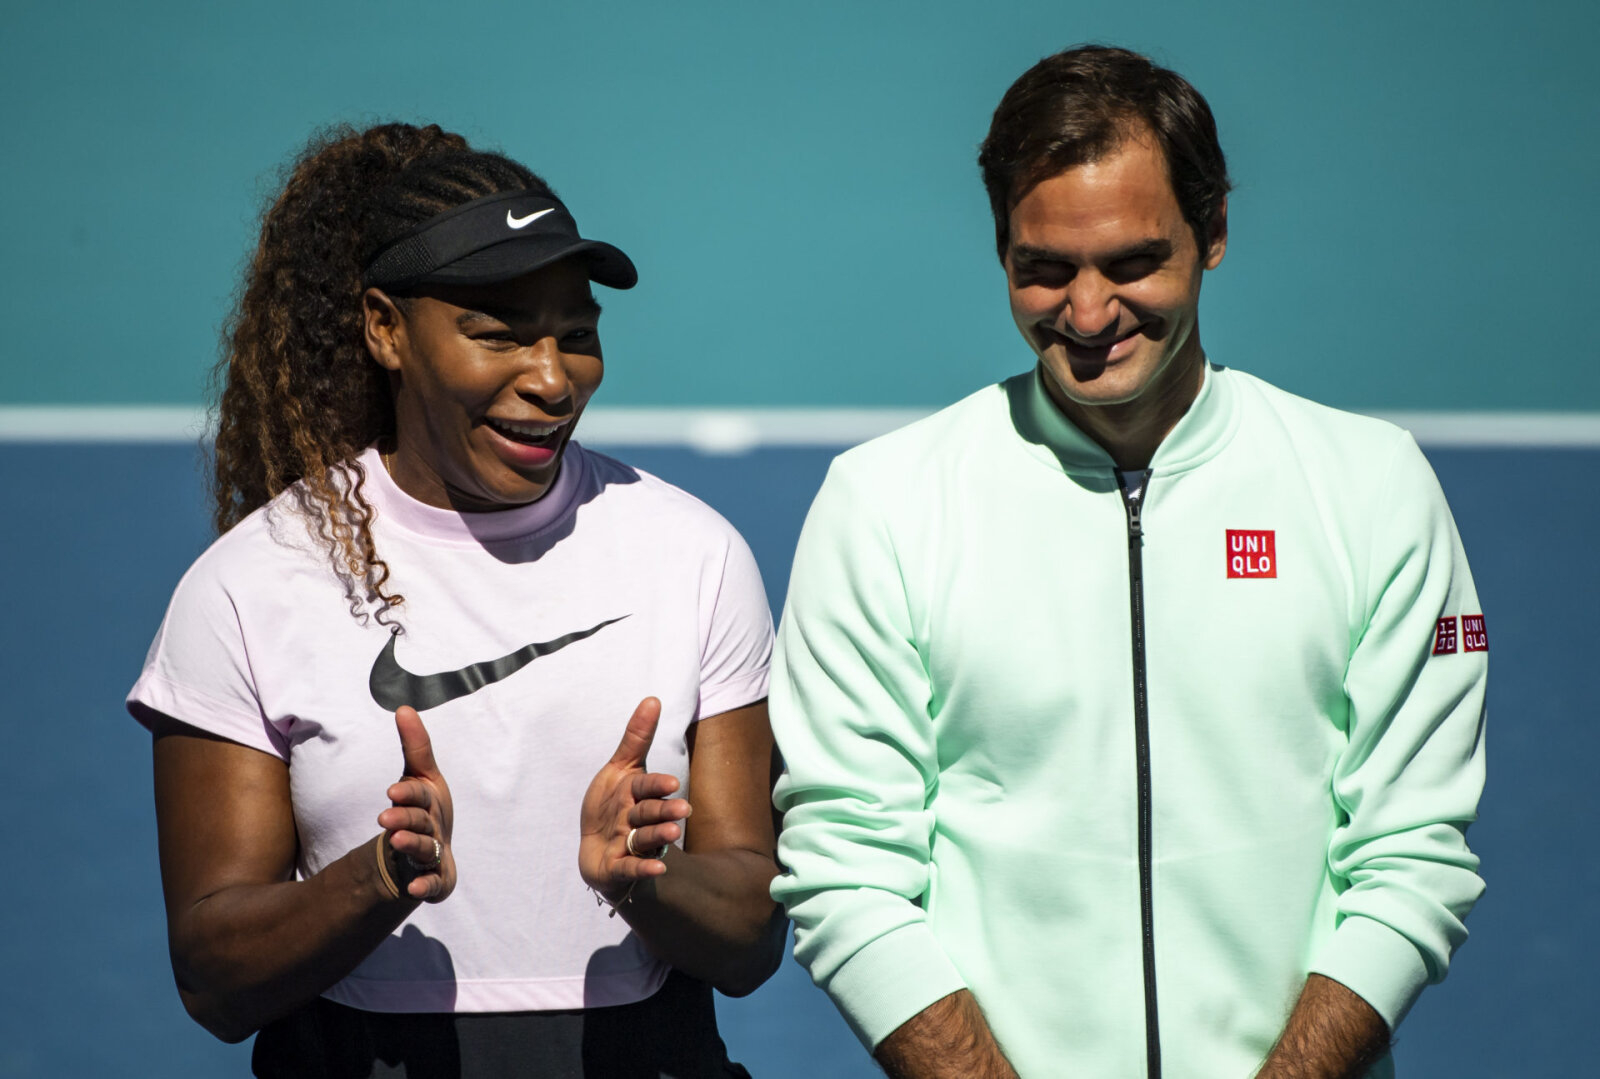 De Maria Sharapova à Serena Williams et Roger Federer, qui sont les plus jeunes et les plus vieux vainqueurs des championnats de Wimbledon ?